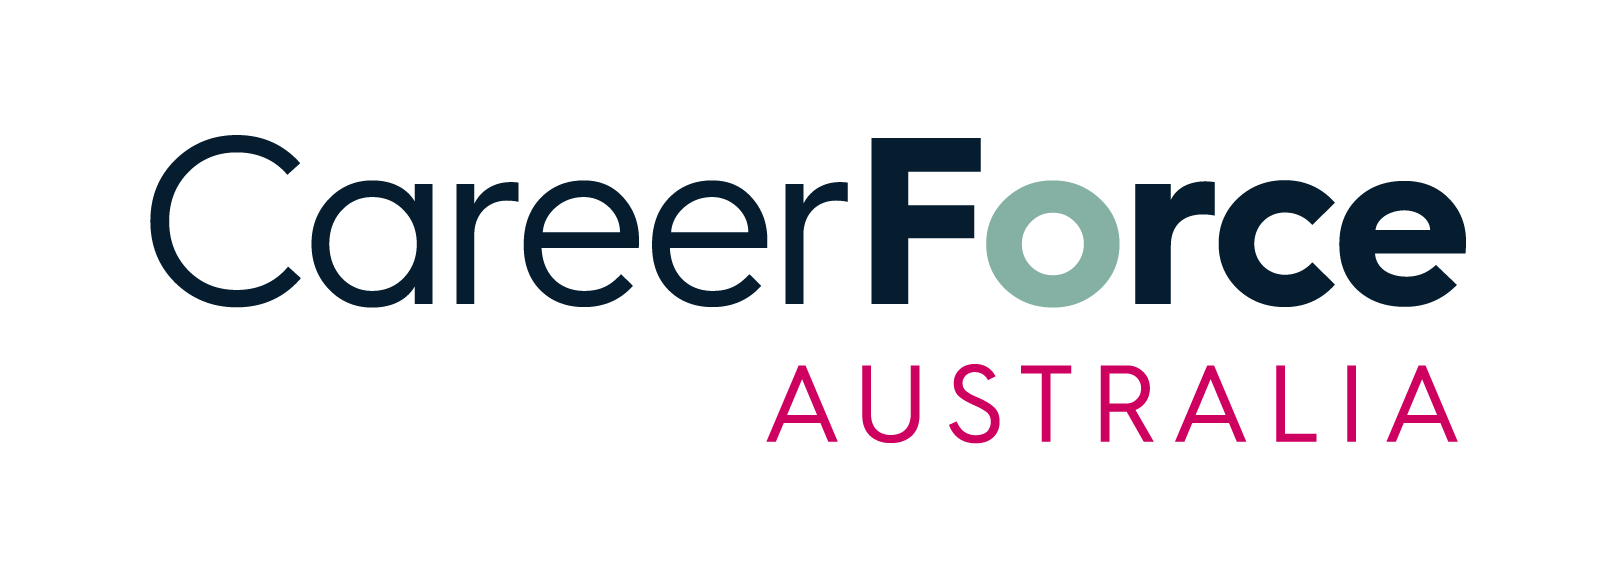 CareerForce Australia